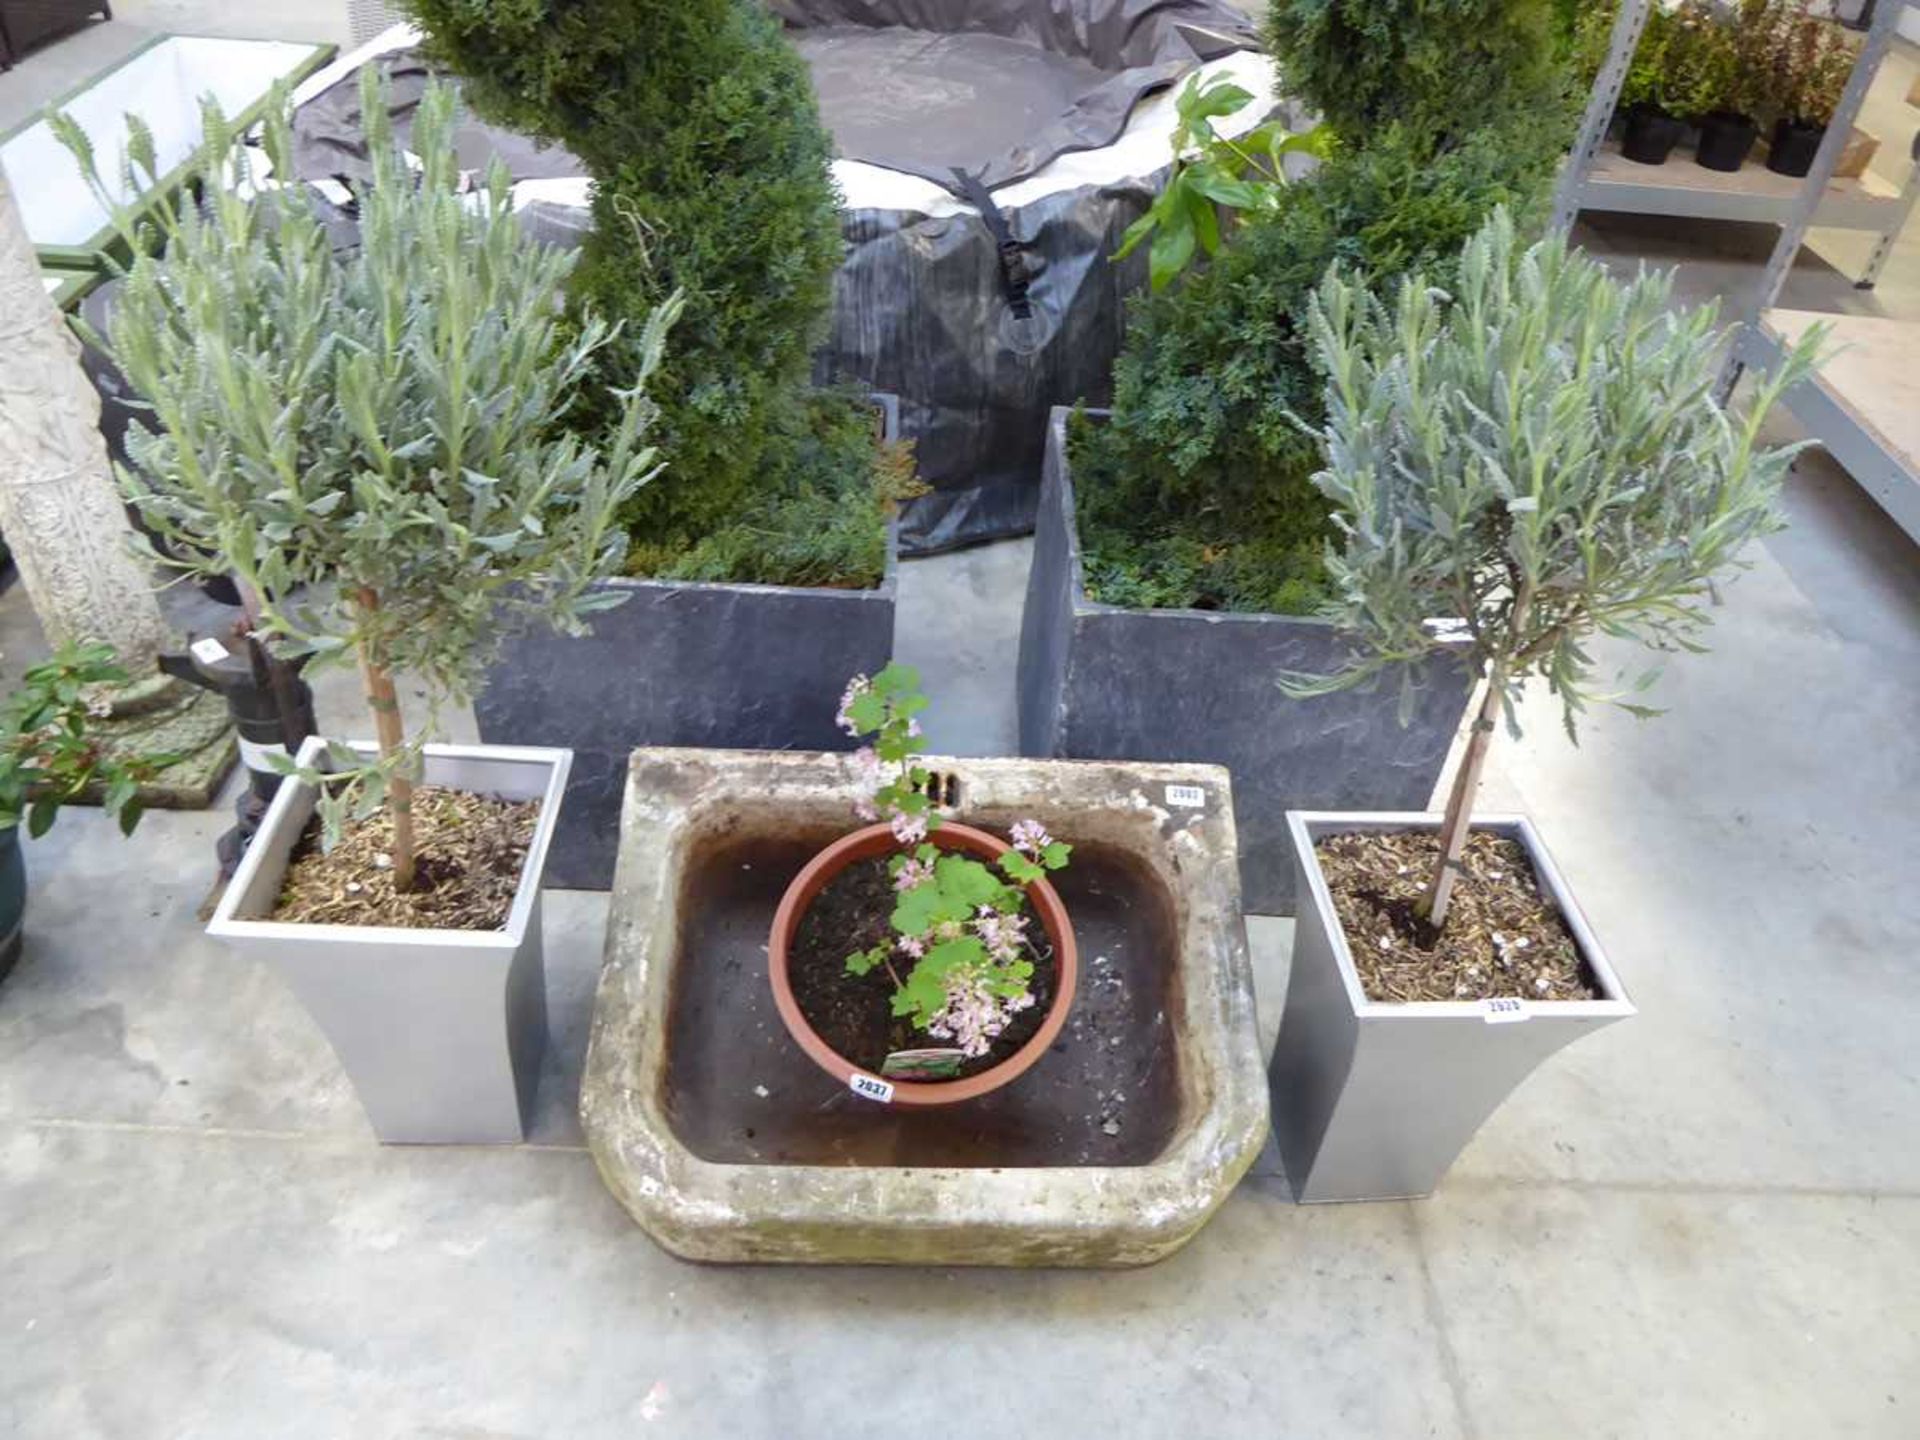 Pair of lavender patio pots